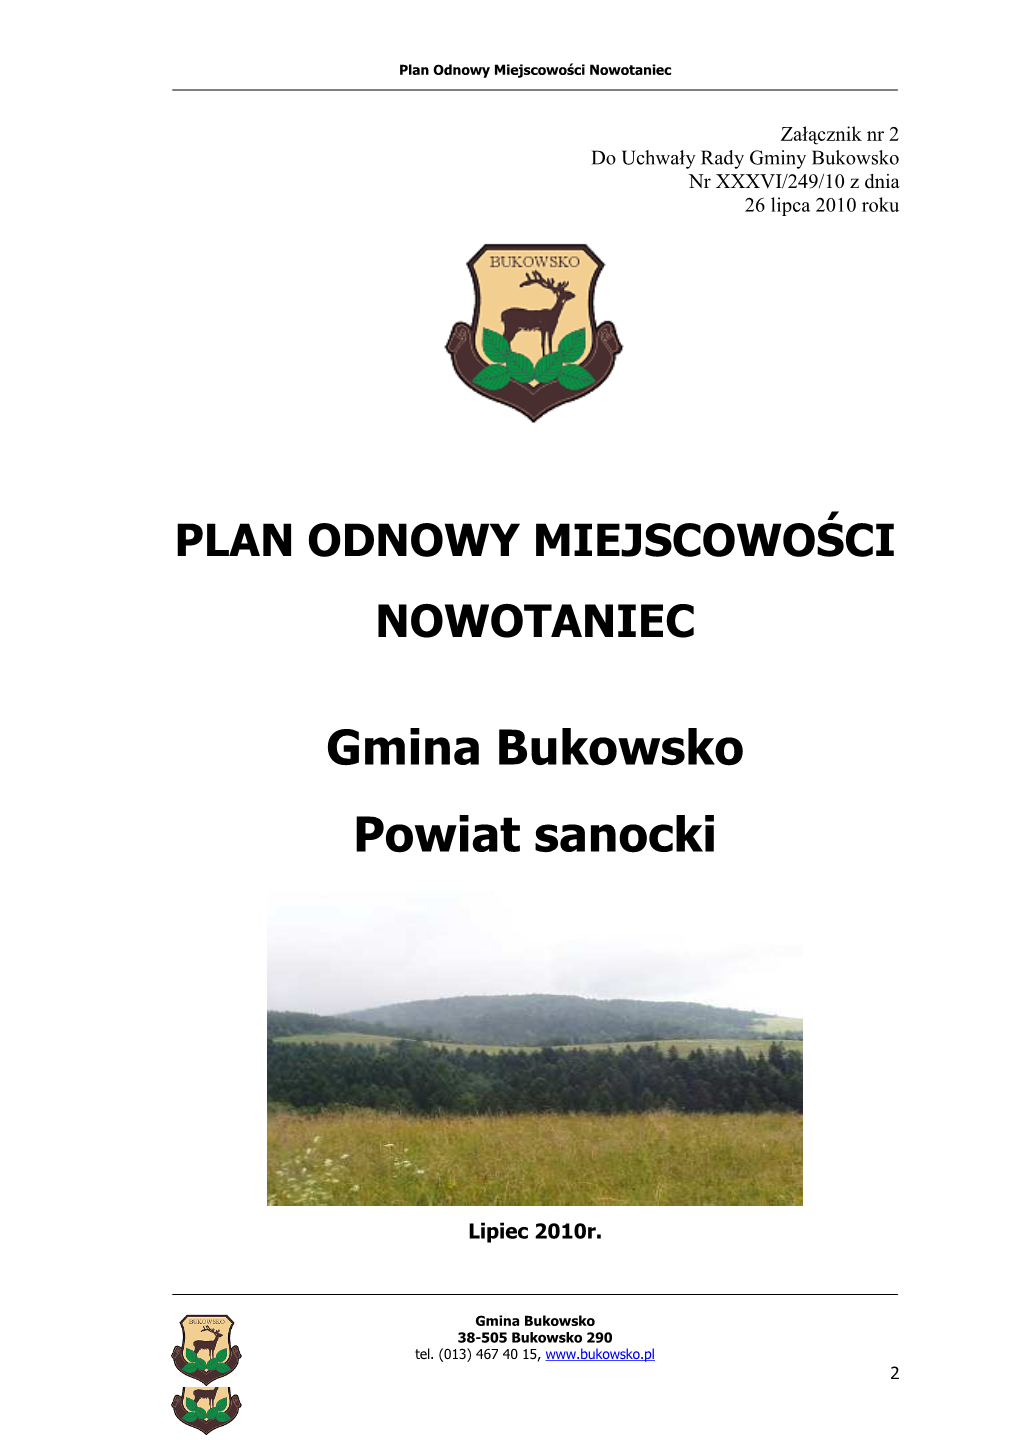 Gmina Bukowsko Powiat Sanocki